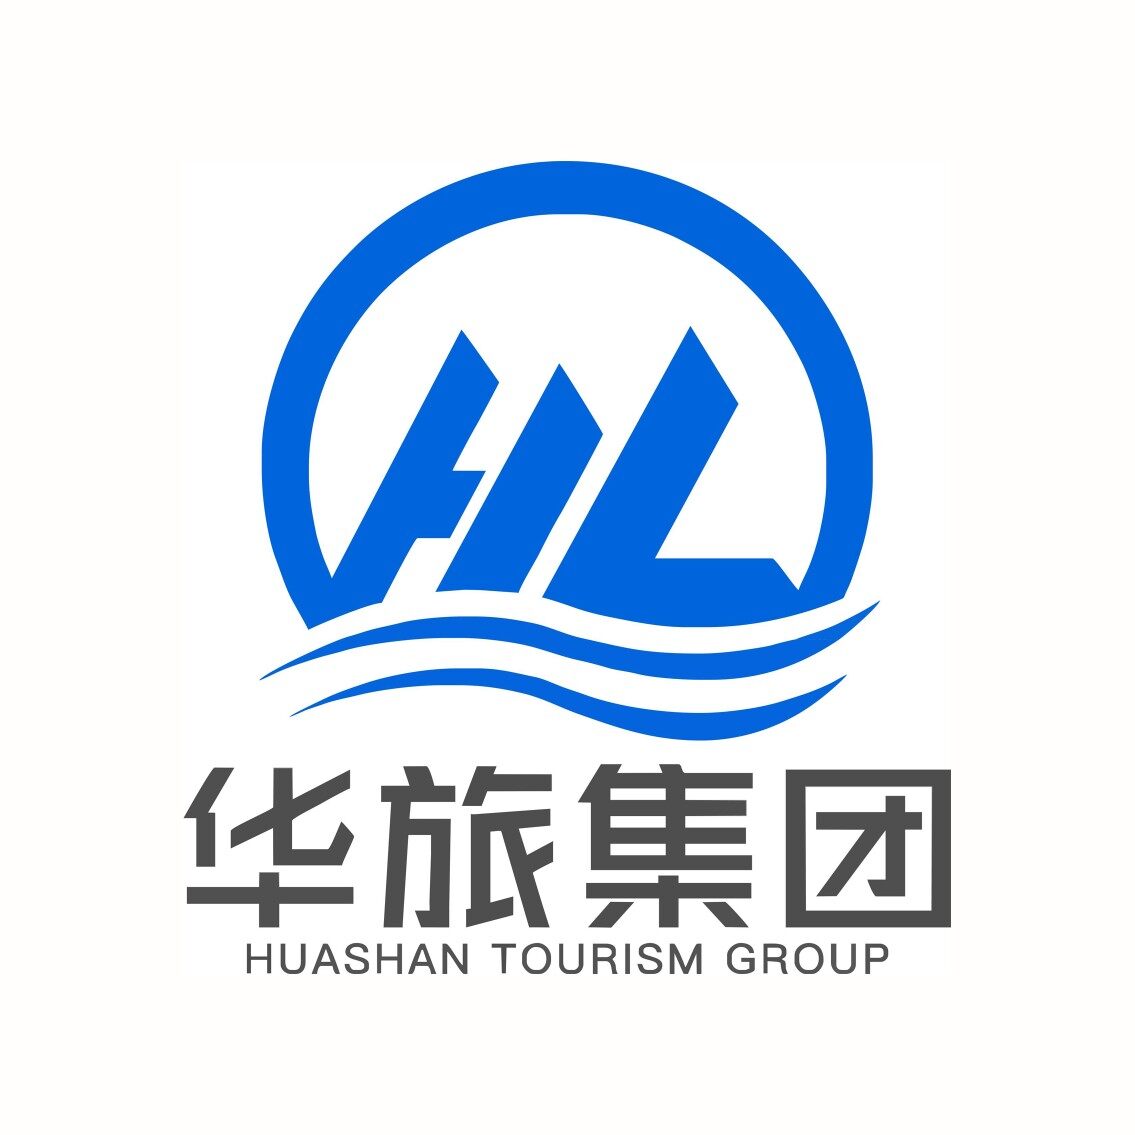 陕西华山旅游集团潼关有限公司logo